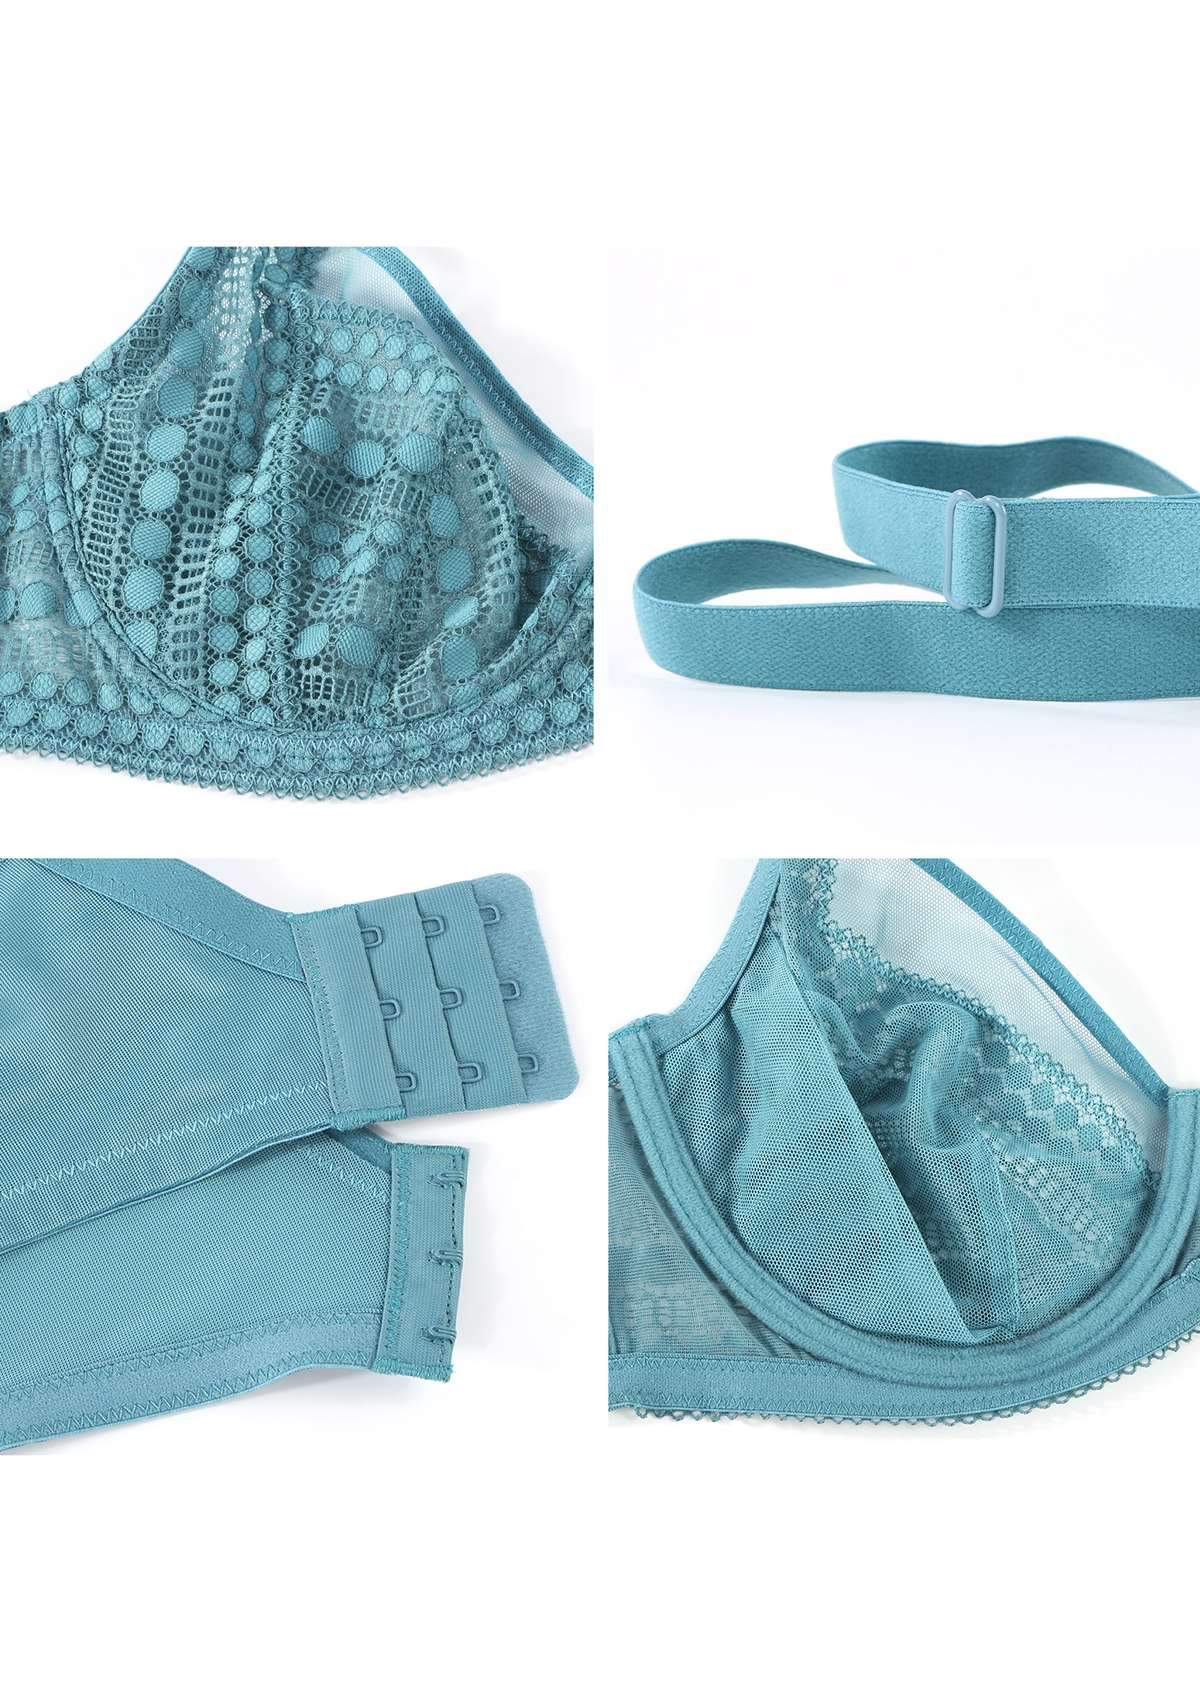 HSIA Heroine Matching Bra And Underwear Set: Bra For Big Boobs - Brittany Blue / 34 / C